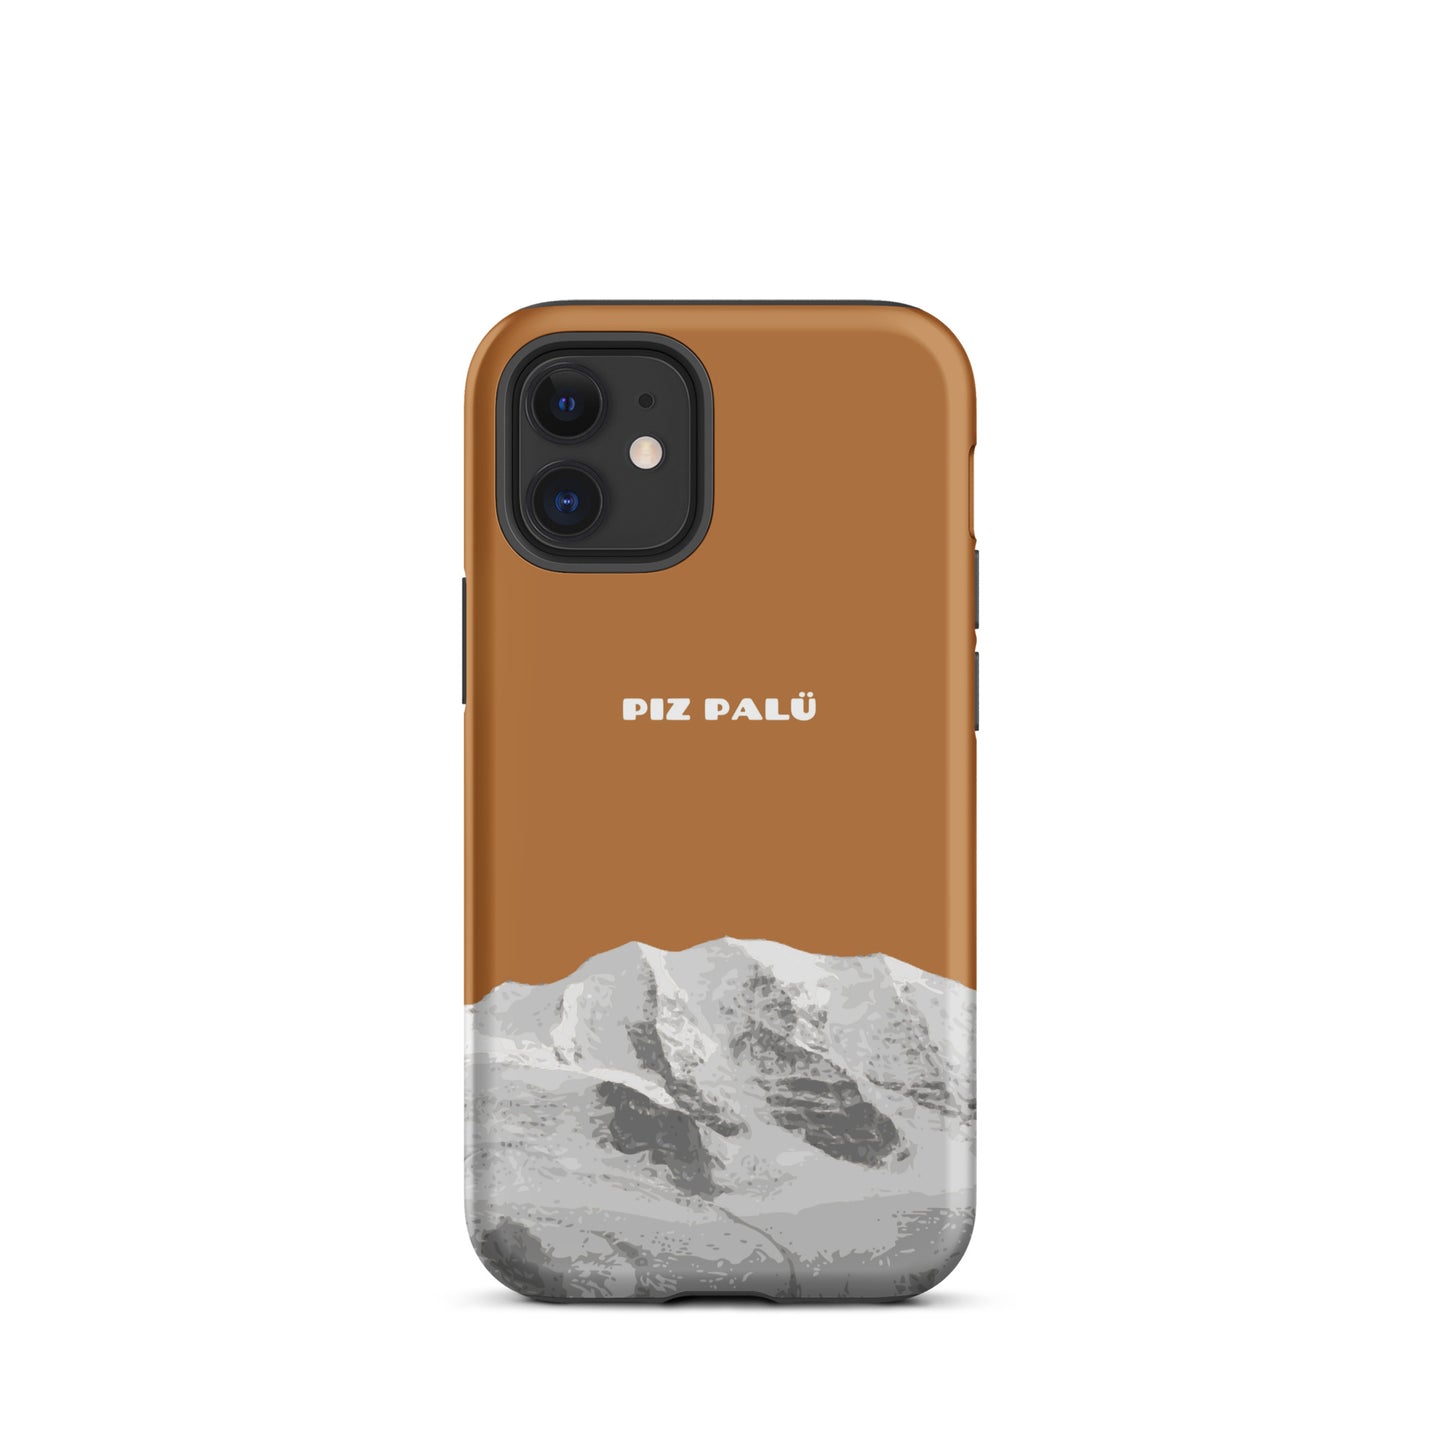 Hülle für das iPhone 12 Mini von Apple in der Farbe Kupfer, dass den Piz Palü in Graubünden zeigt.